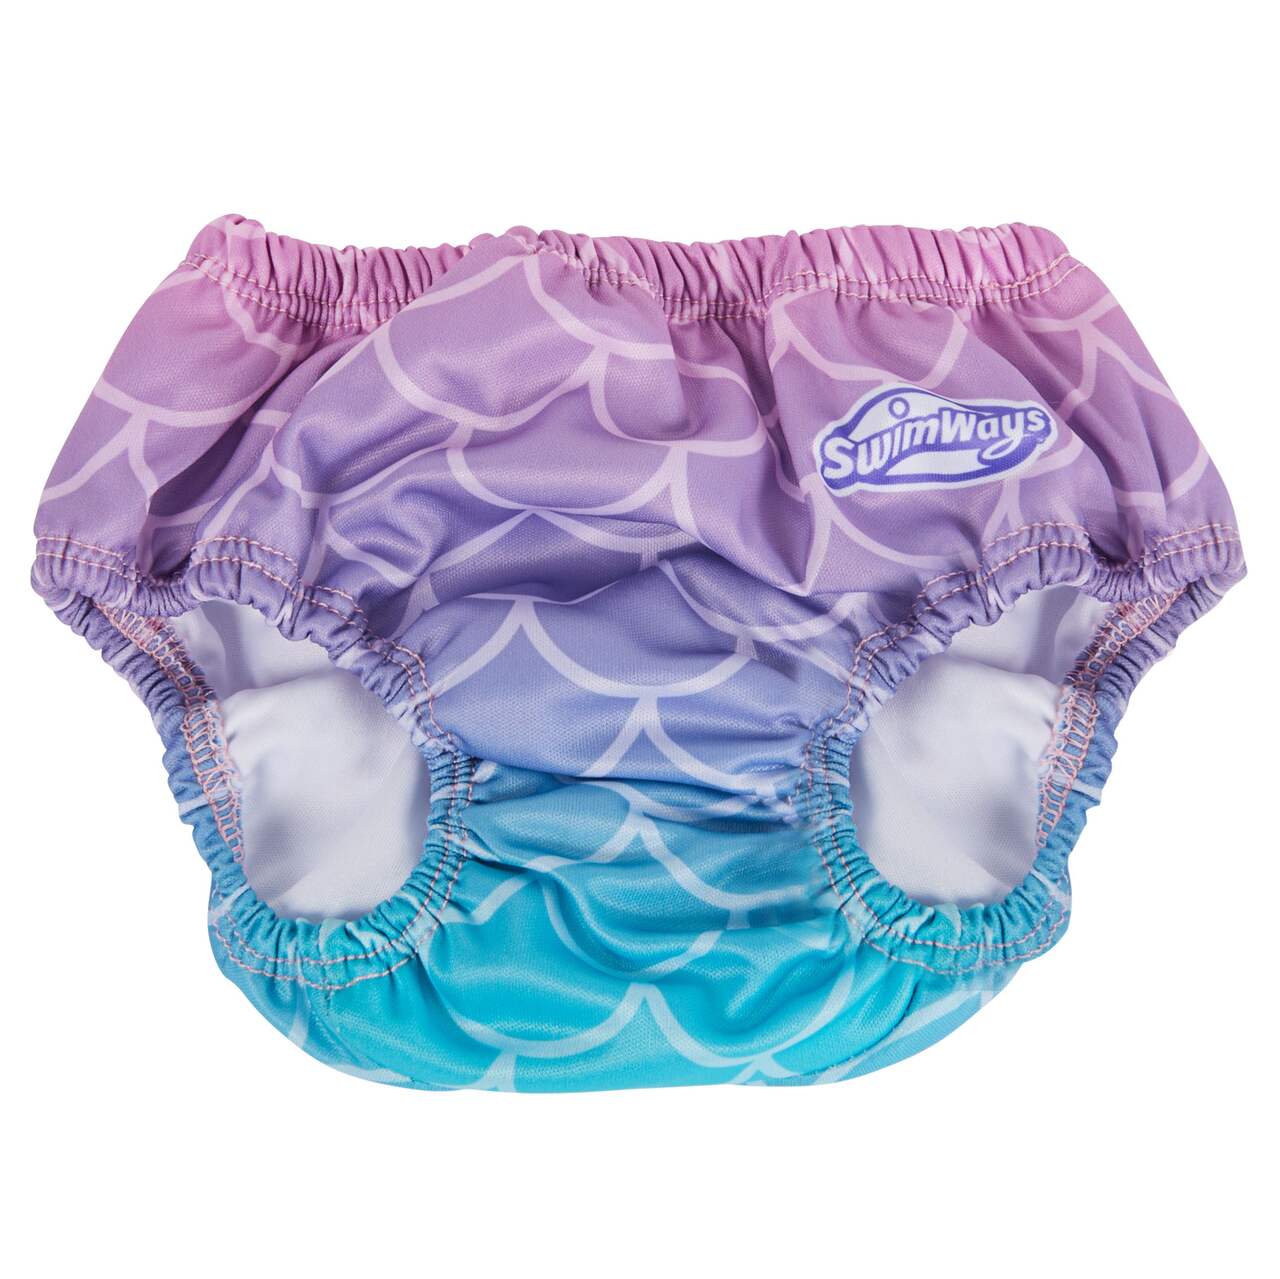 Swimways Baby Swim Diaper, Medium, Assorted Colours